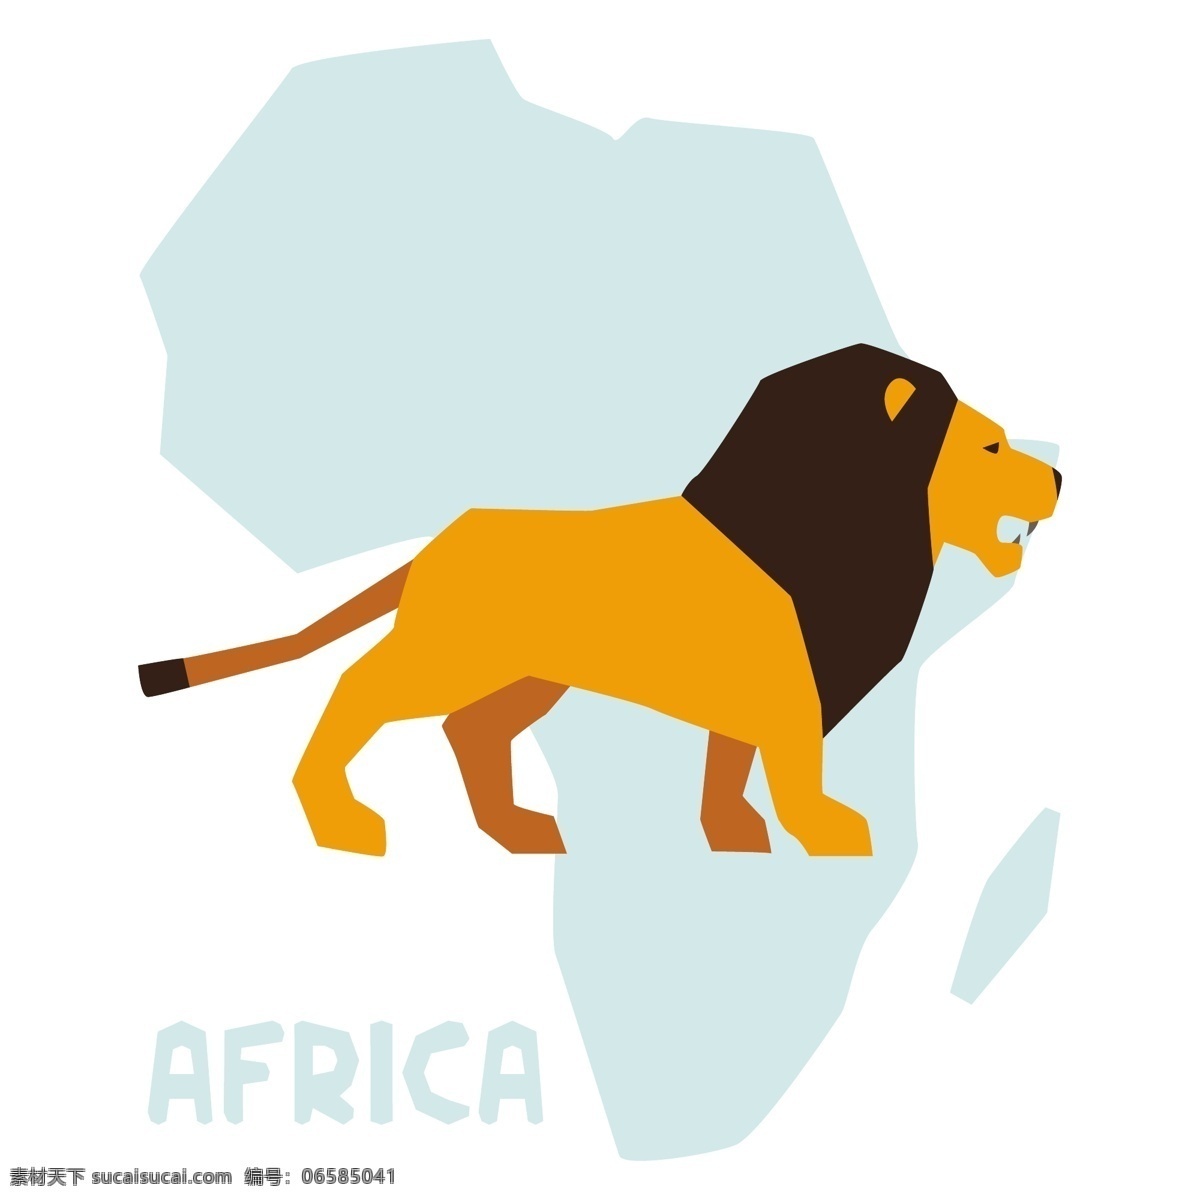 非洲雄狮 狮子 非洲 非洲大草原 非洲设计 南非 背景底纹 底纹边框